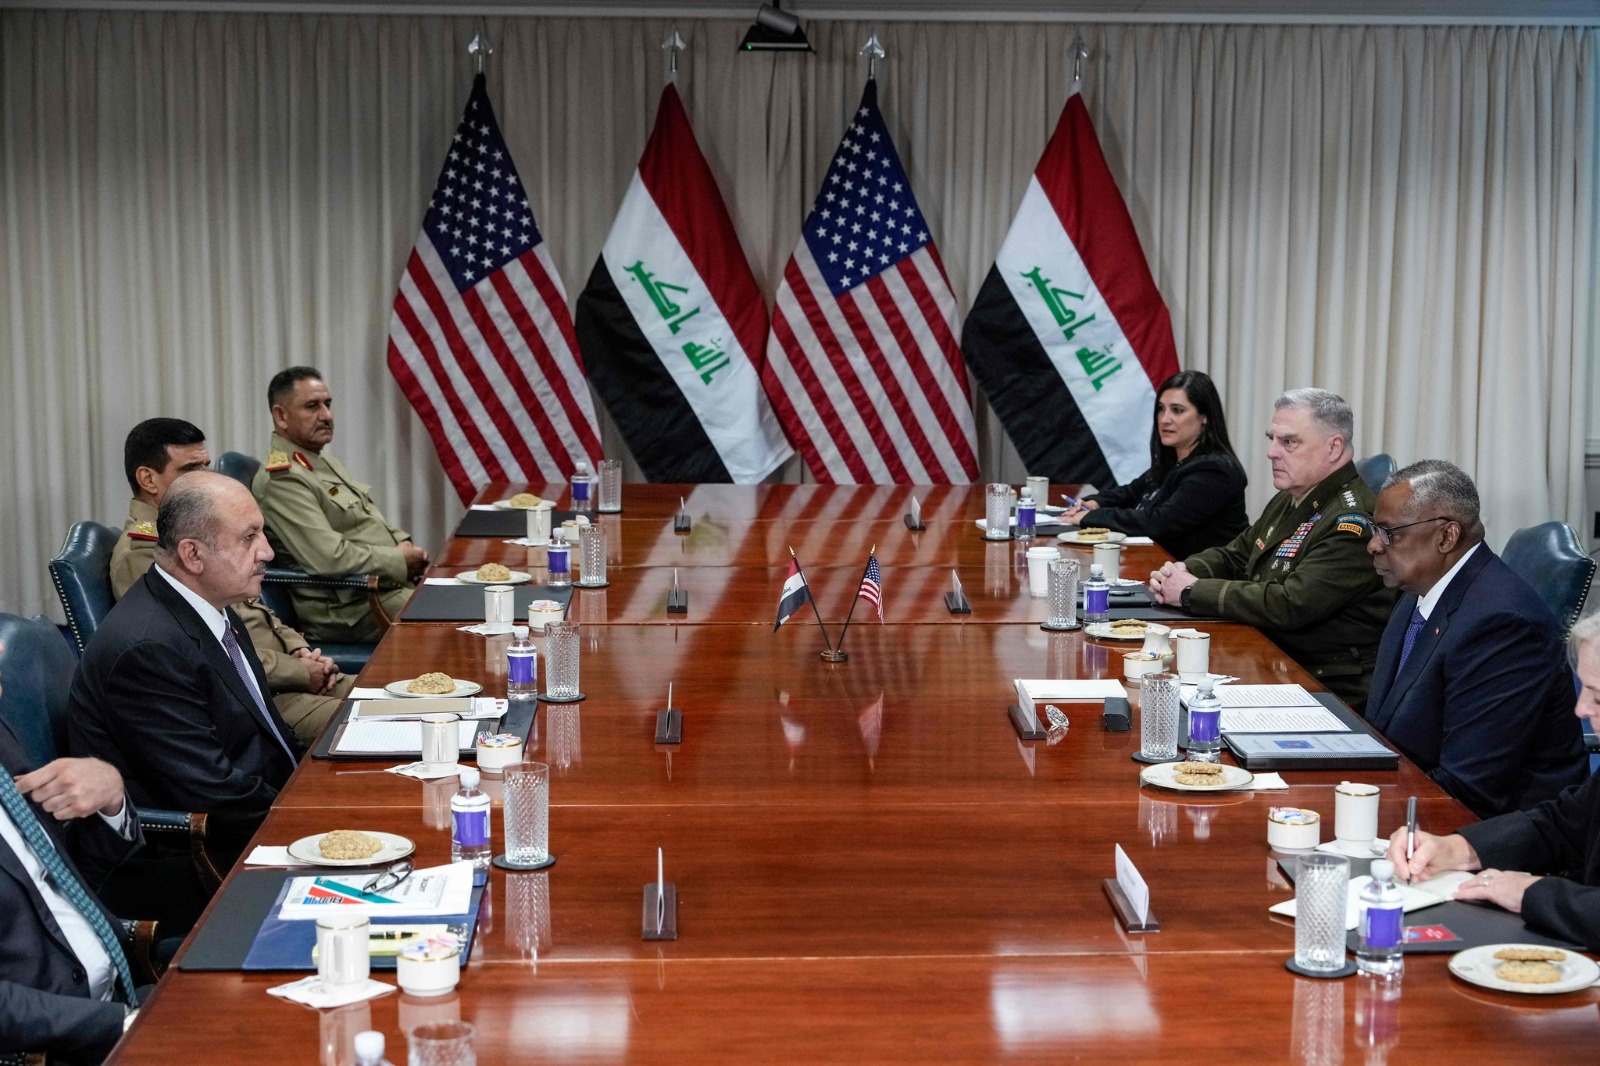 الحوار الأمني بين واشنطن وبغداد ينتهي بتوقيع محضر وعقد حوار مستقبلي بشأن مهام التحالف الدولي